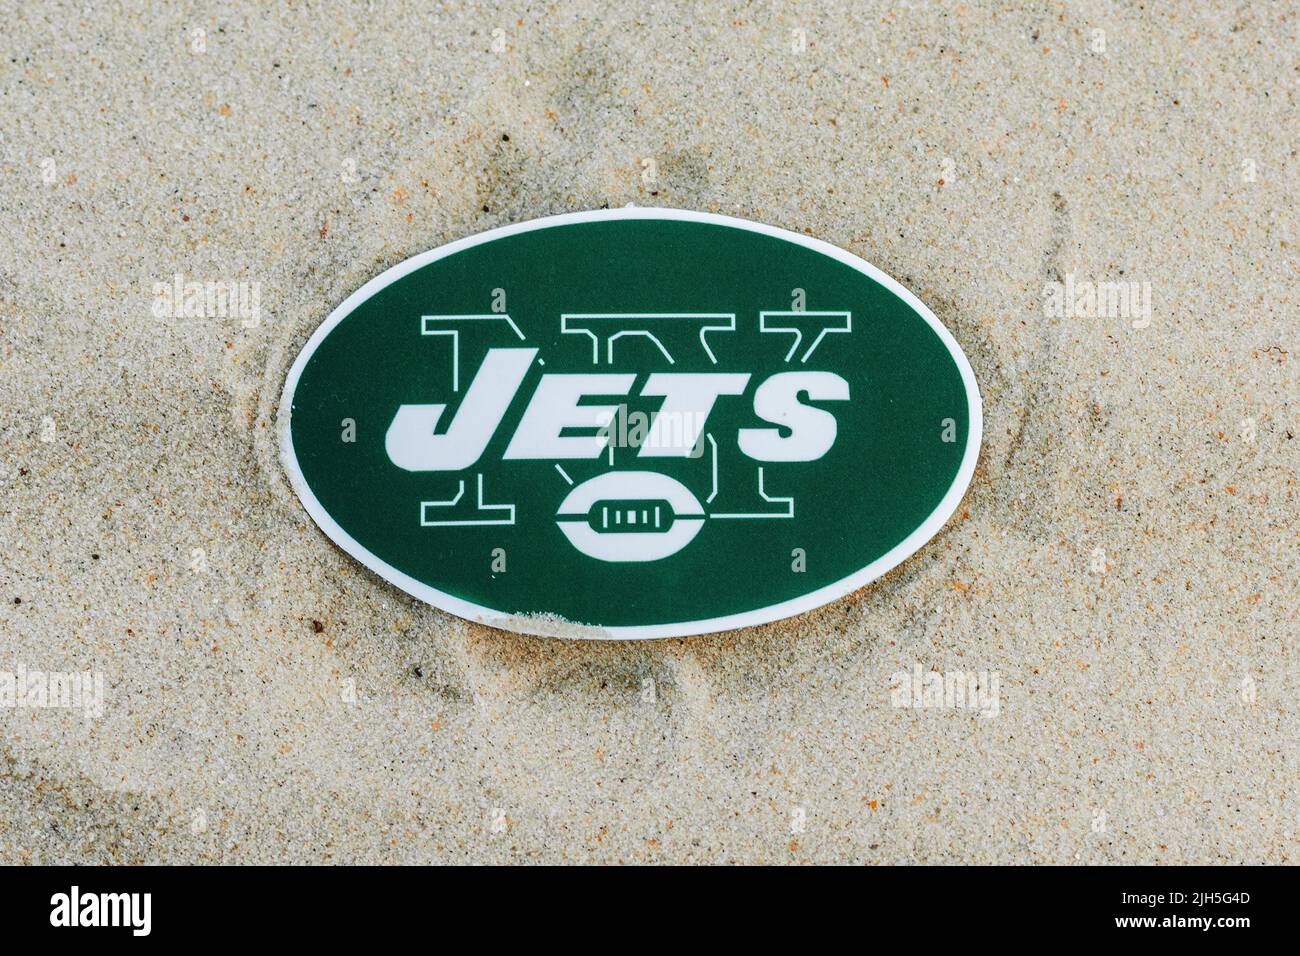 jets logo football